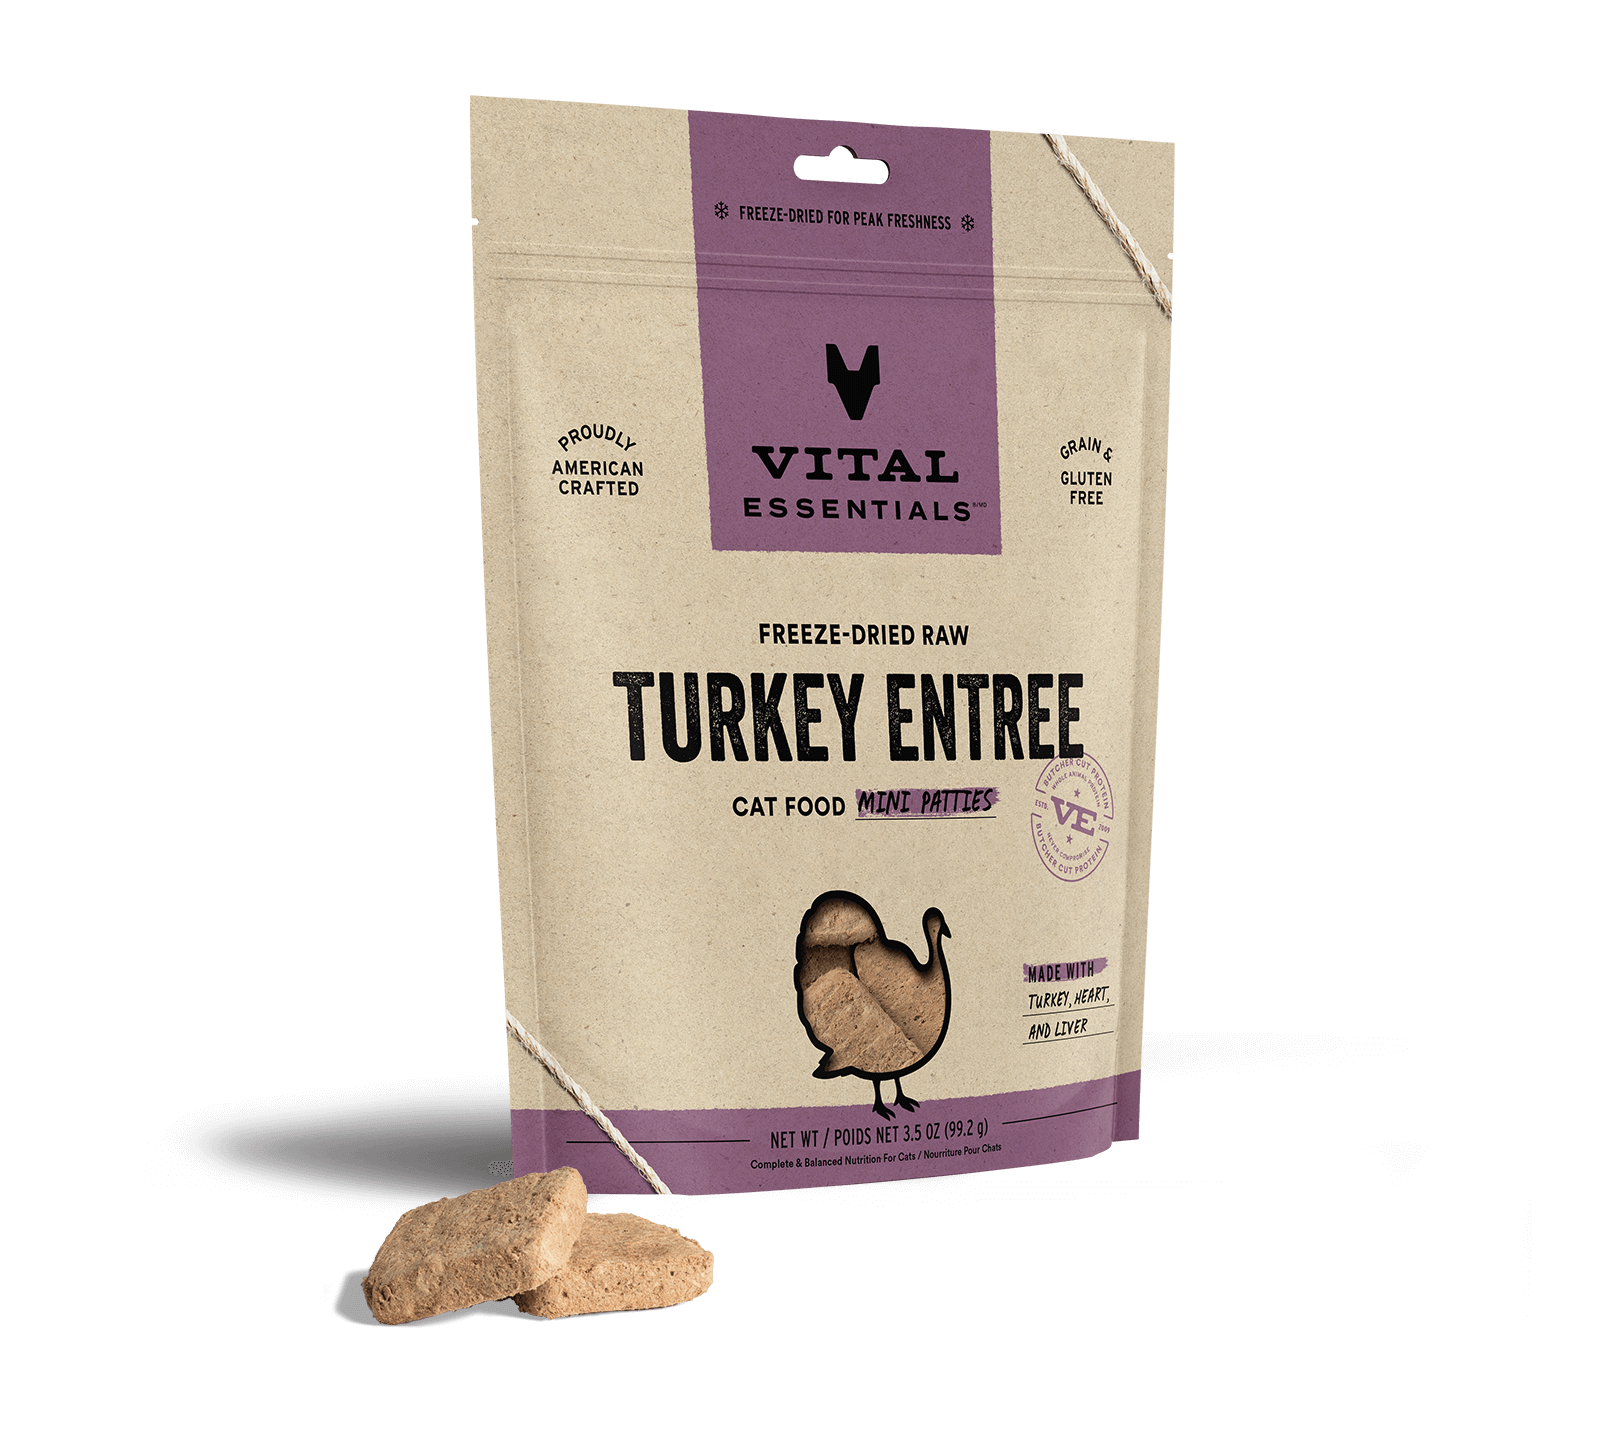 Vital Essentials Freeze-Dried Raw Turkey Entree Cat Food Mini Patties, 3.5 oz - Health/First Aid